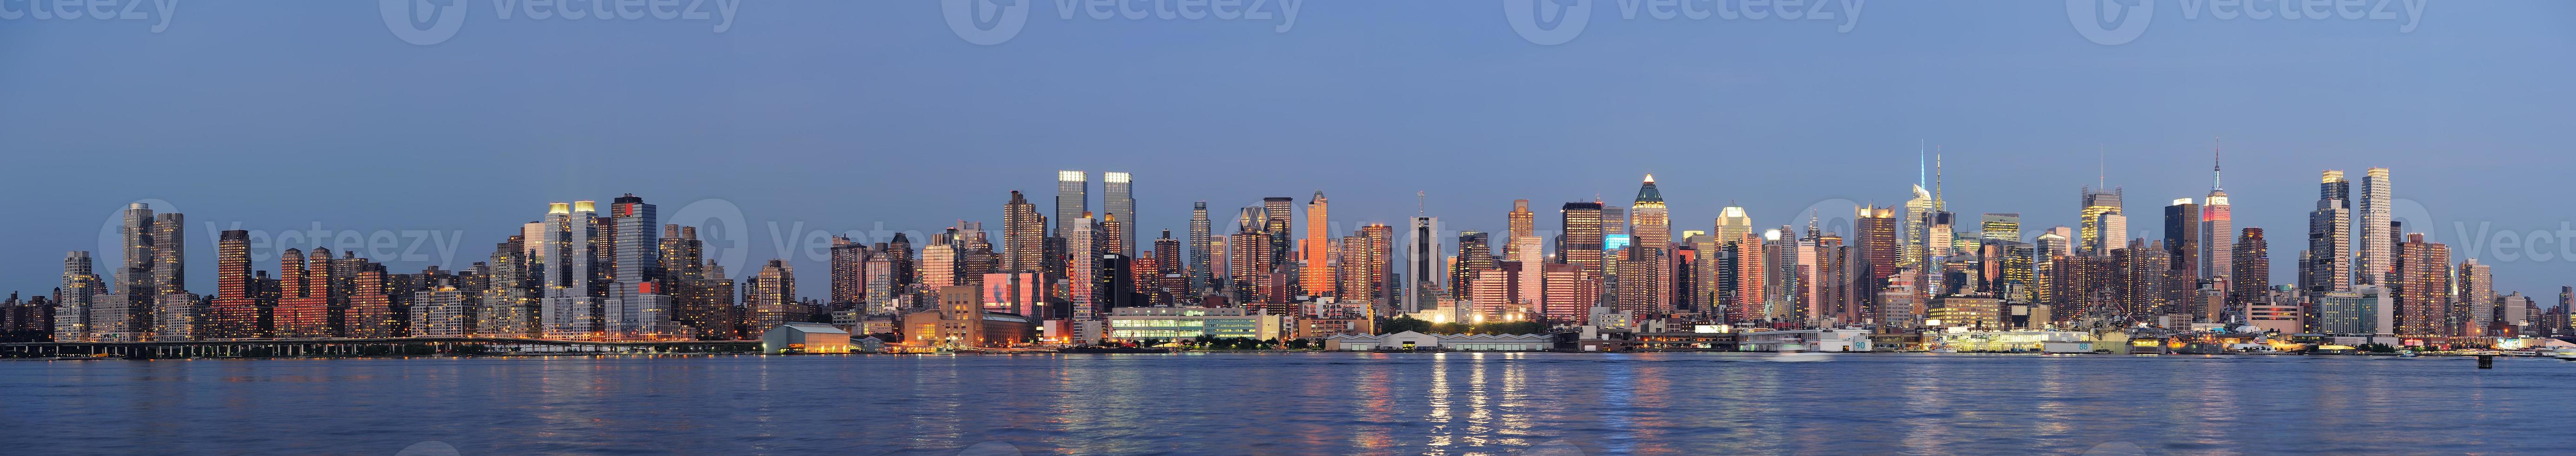 new york city manhattan sur la rivière hudson photo